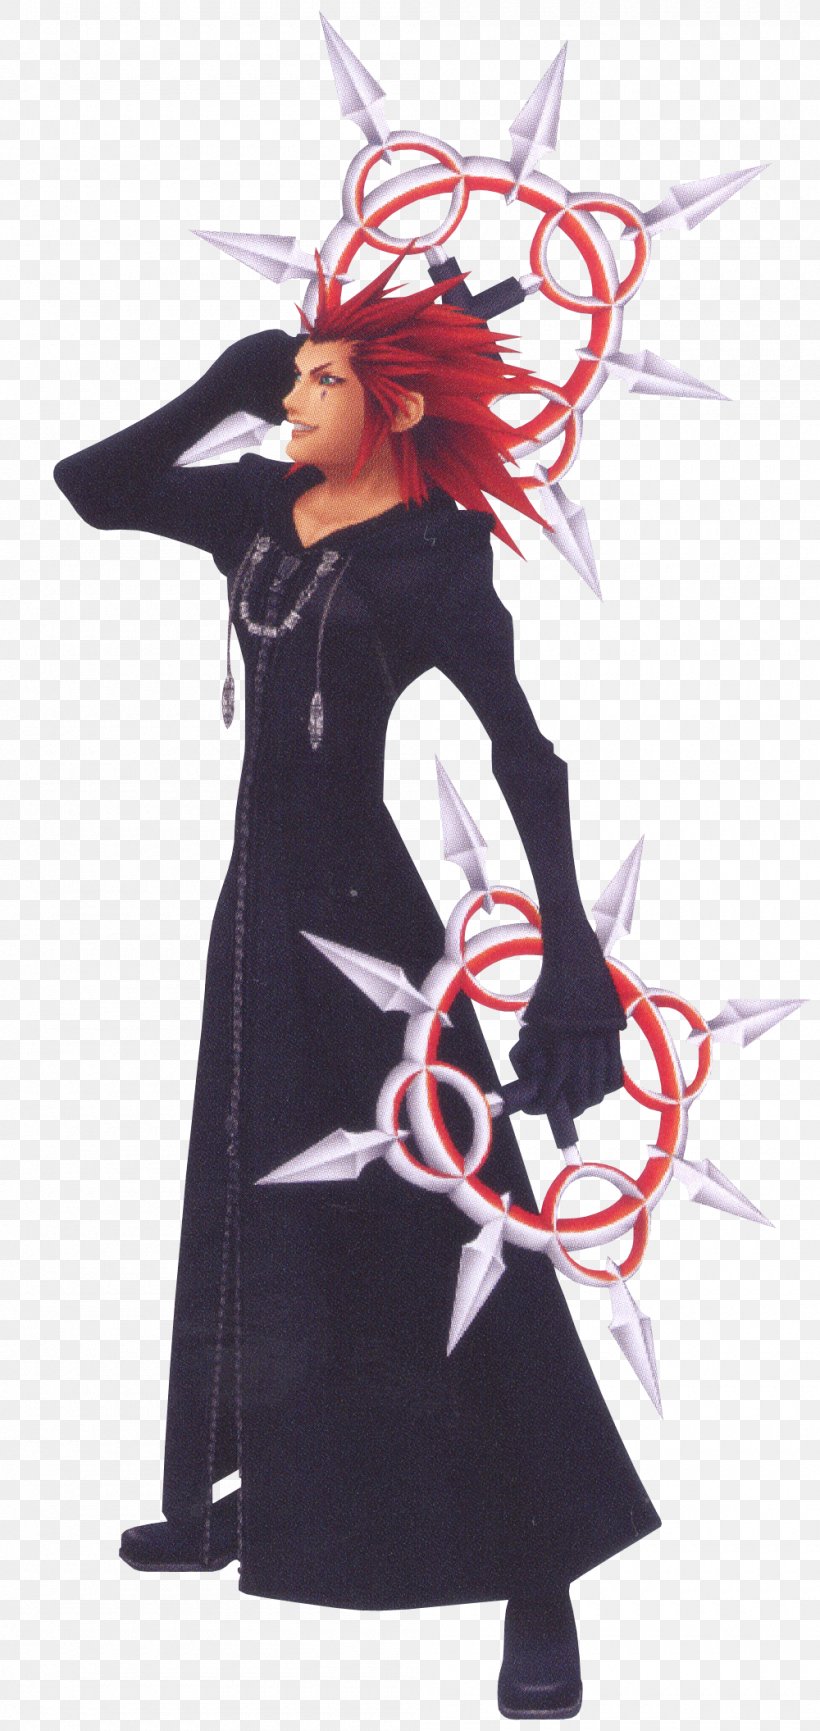 Kingdom Hearts III Kingdom Hearts: Chain Of Memories Kingdom Hearts 358/2 Days, PNG, 1000x2111px, Kingdom Hearts Ii, Characters Of Kingdom Hearts, Clothing, Costume, Costume Design Download Free